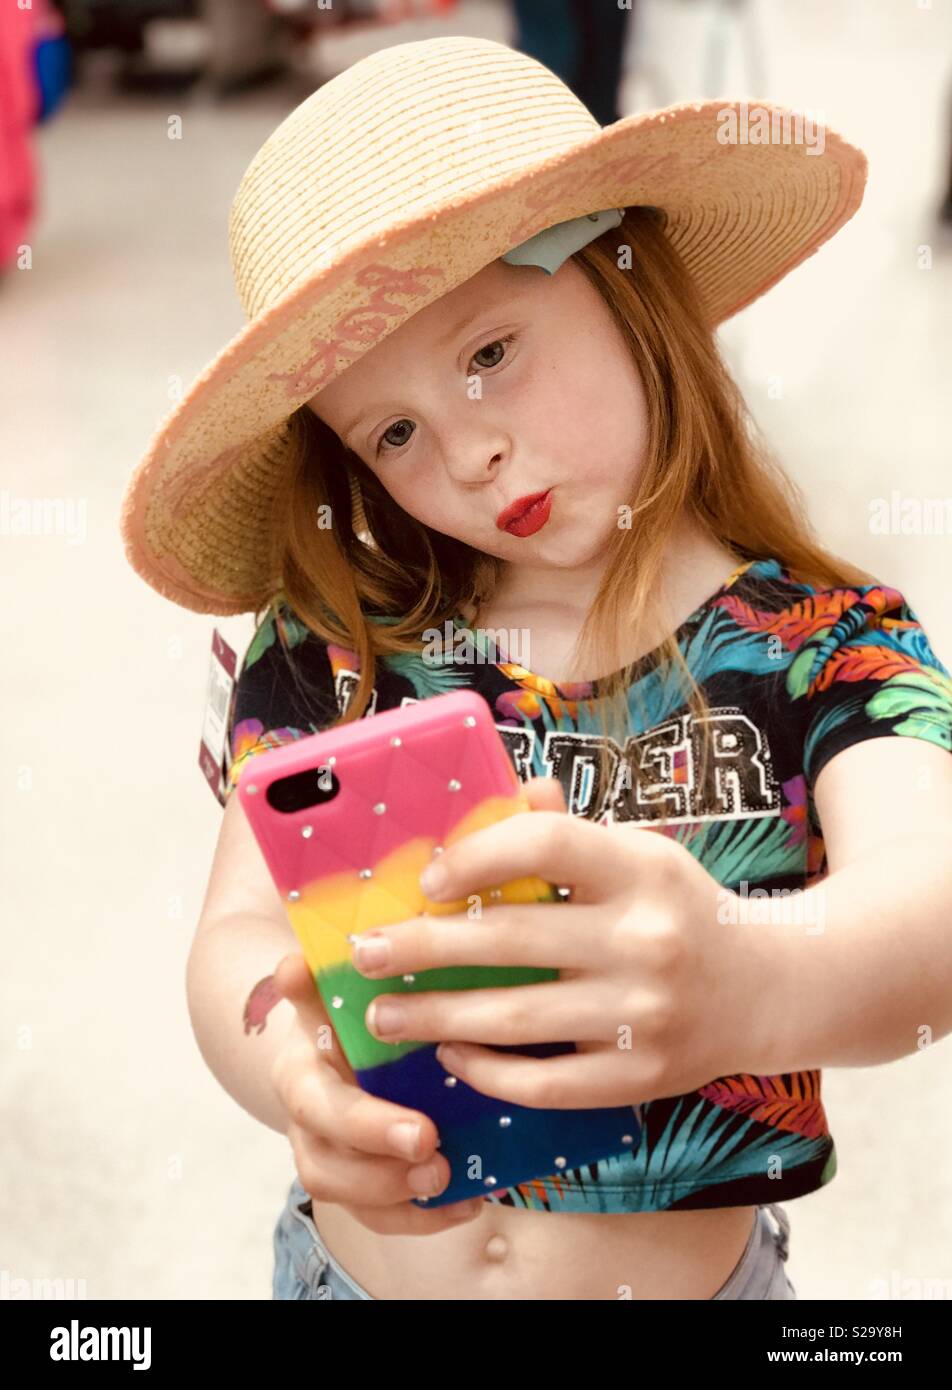 Junge 7 Jahre altes Mädchen ein selfie Foto von sich Stockfoto